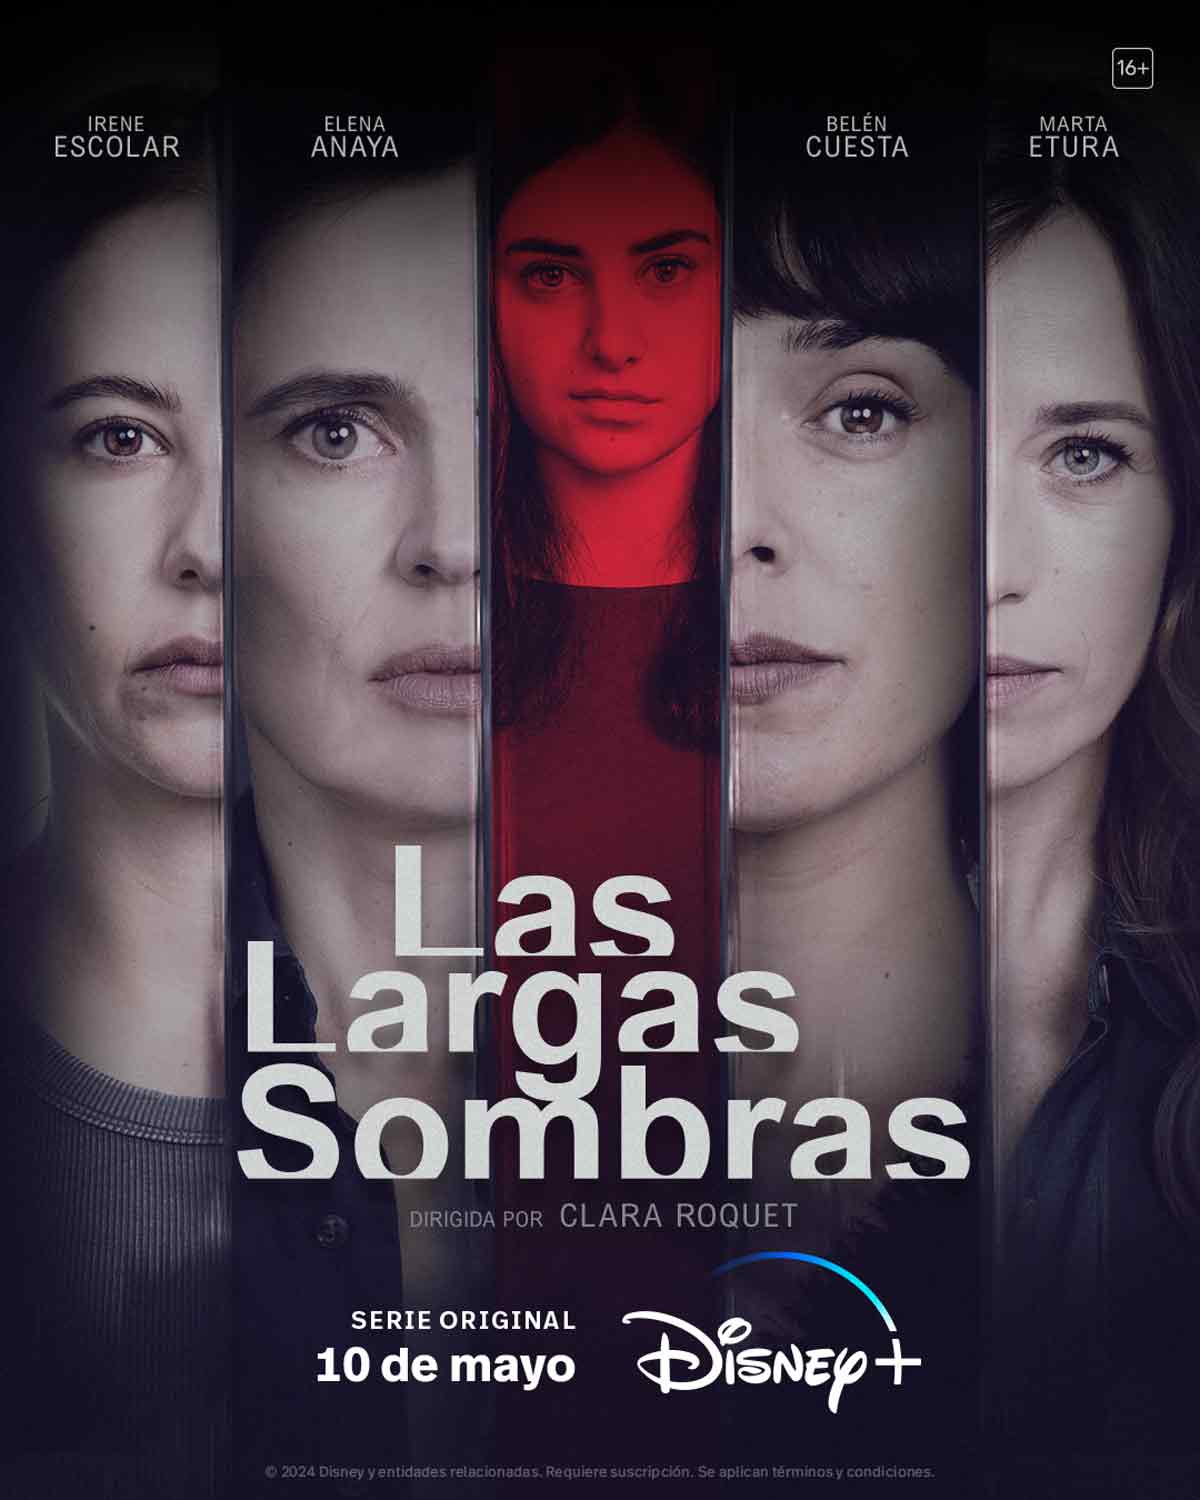 [心得] 久遠的陰影 Las largas sombras (雷) Disney+ 西班牙懸疑劇